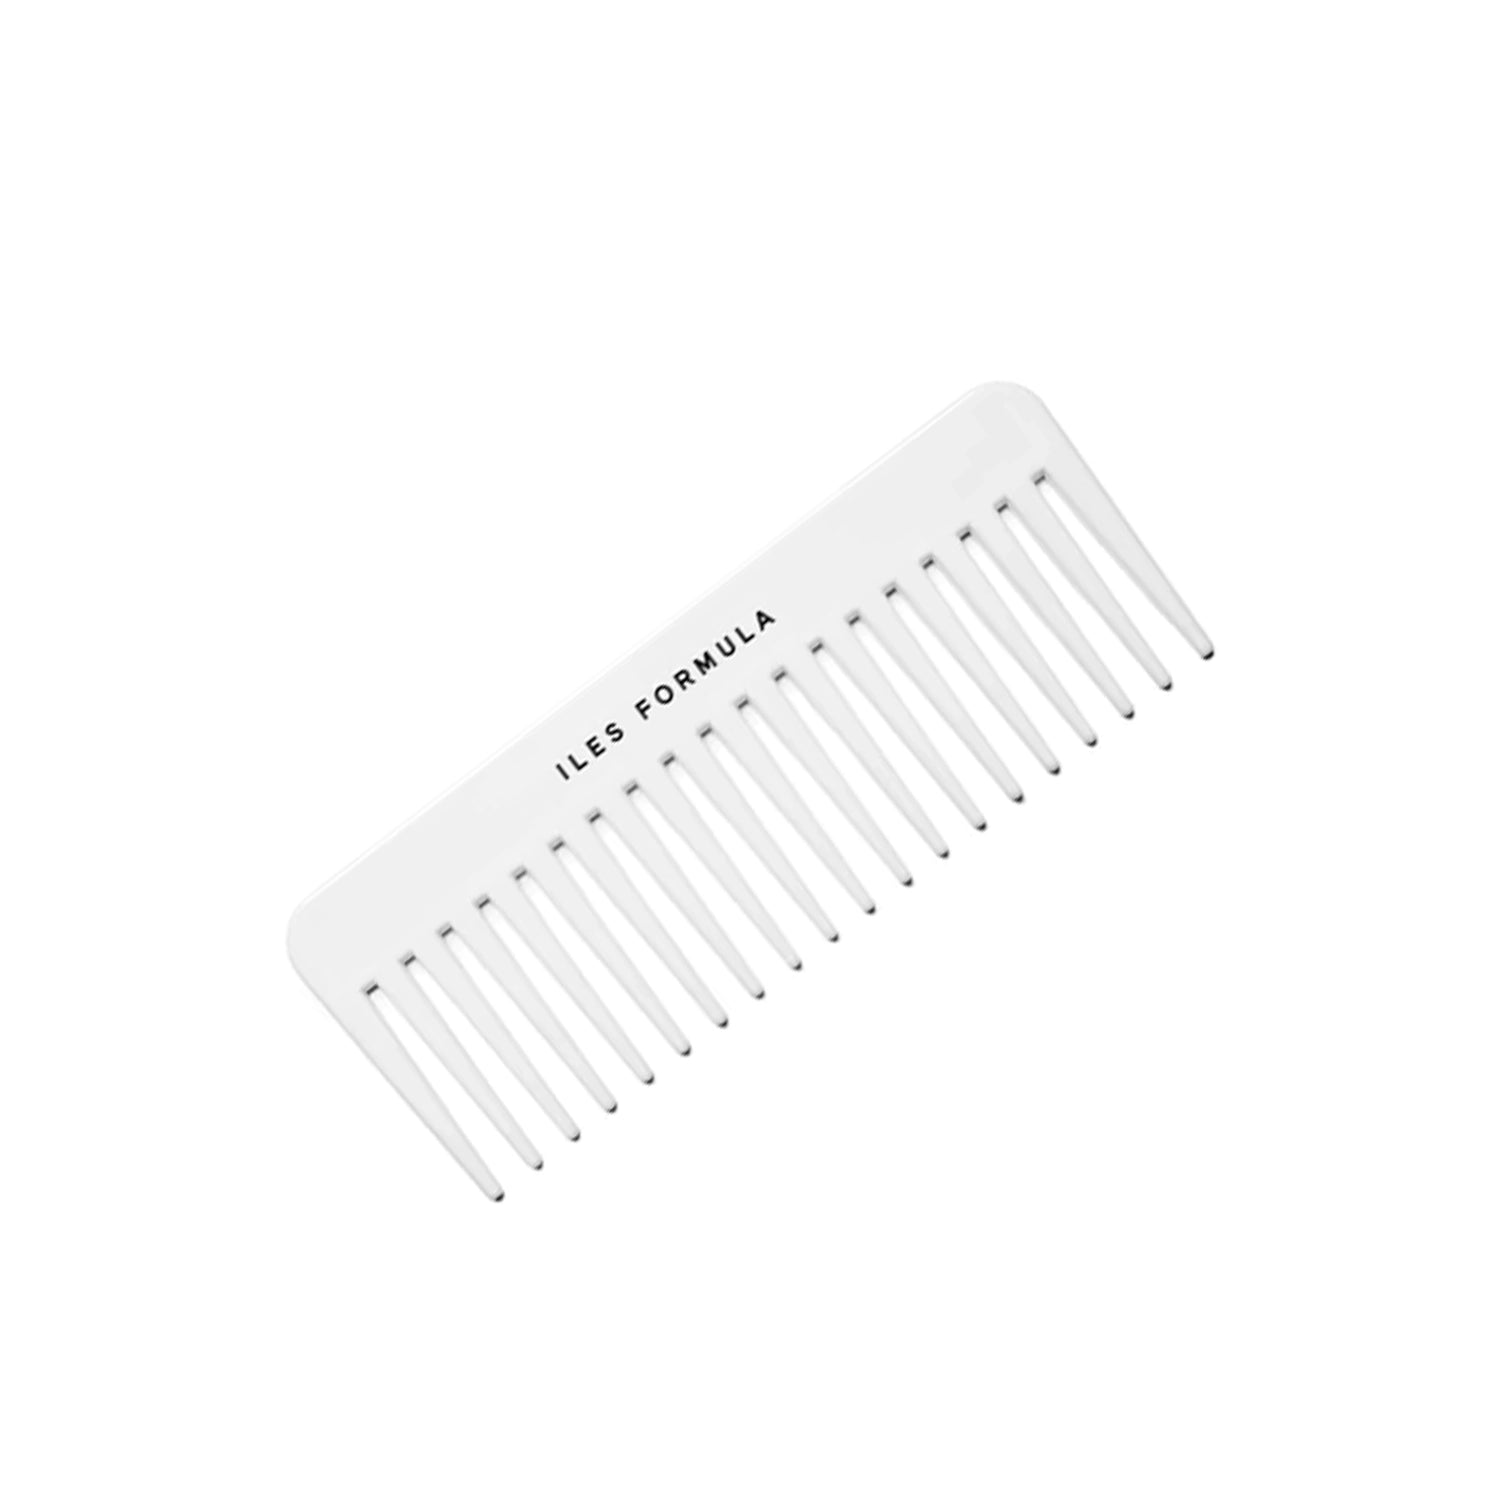 Iles Formula - Dispenser comb